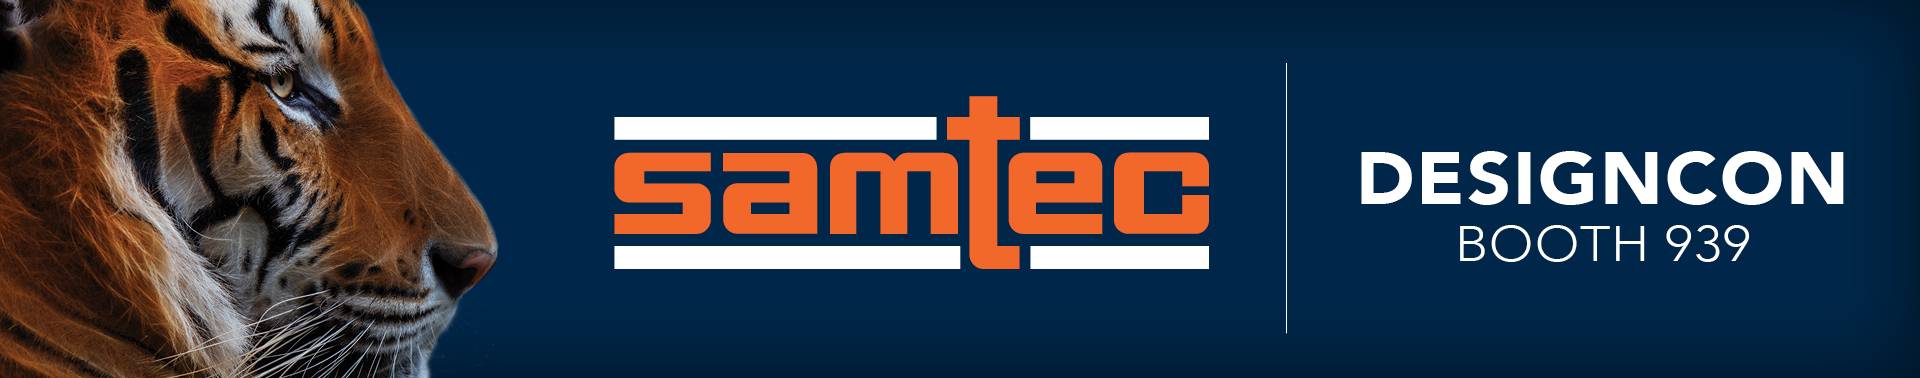 Samtec Dominates DesignCon Again